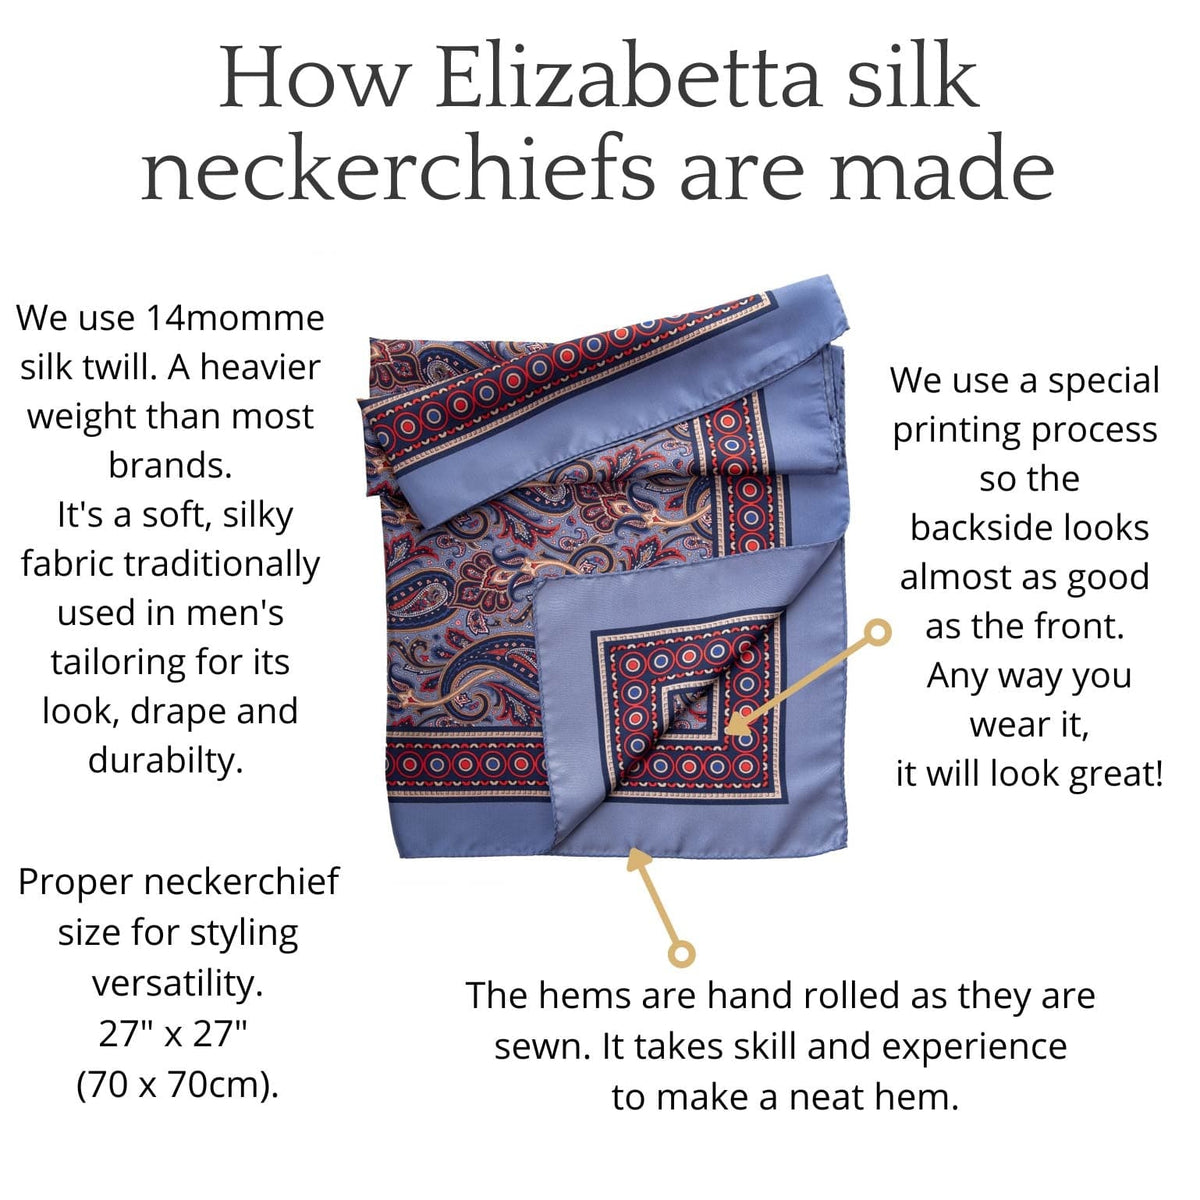 How an Elizabetta neckerchiefs are made